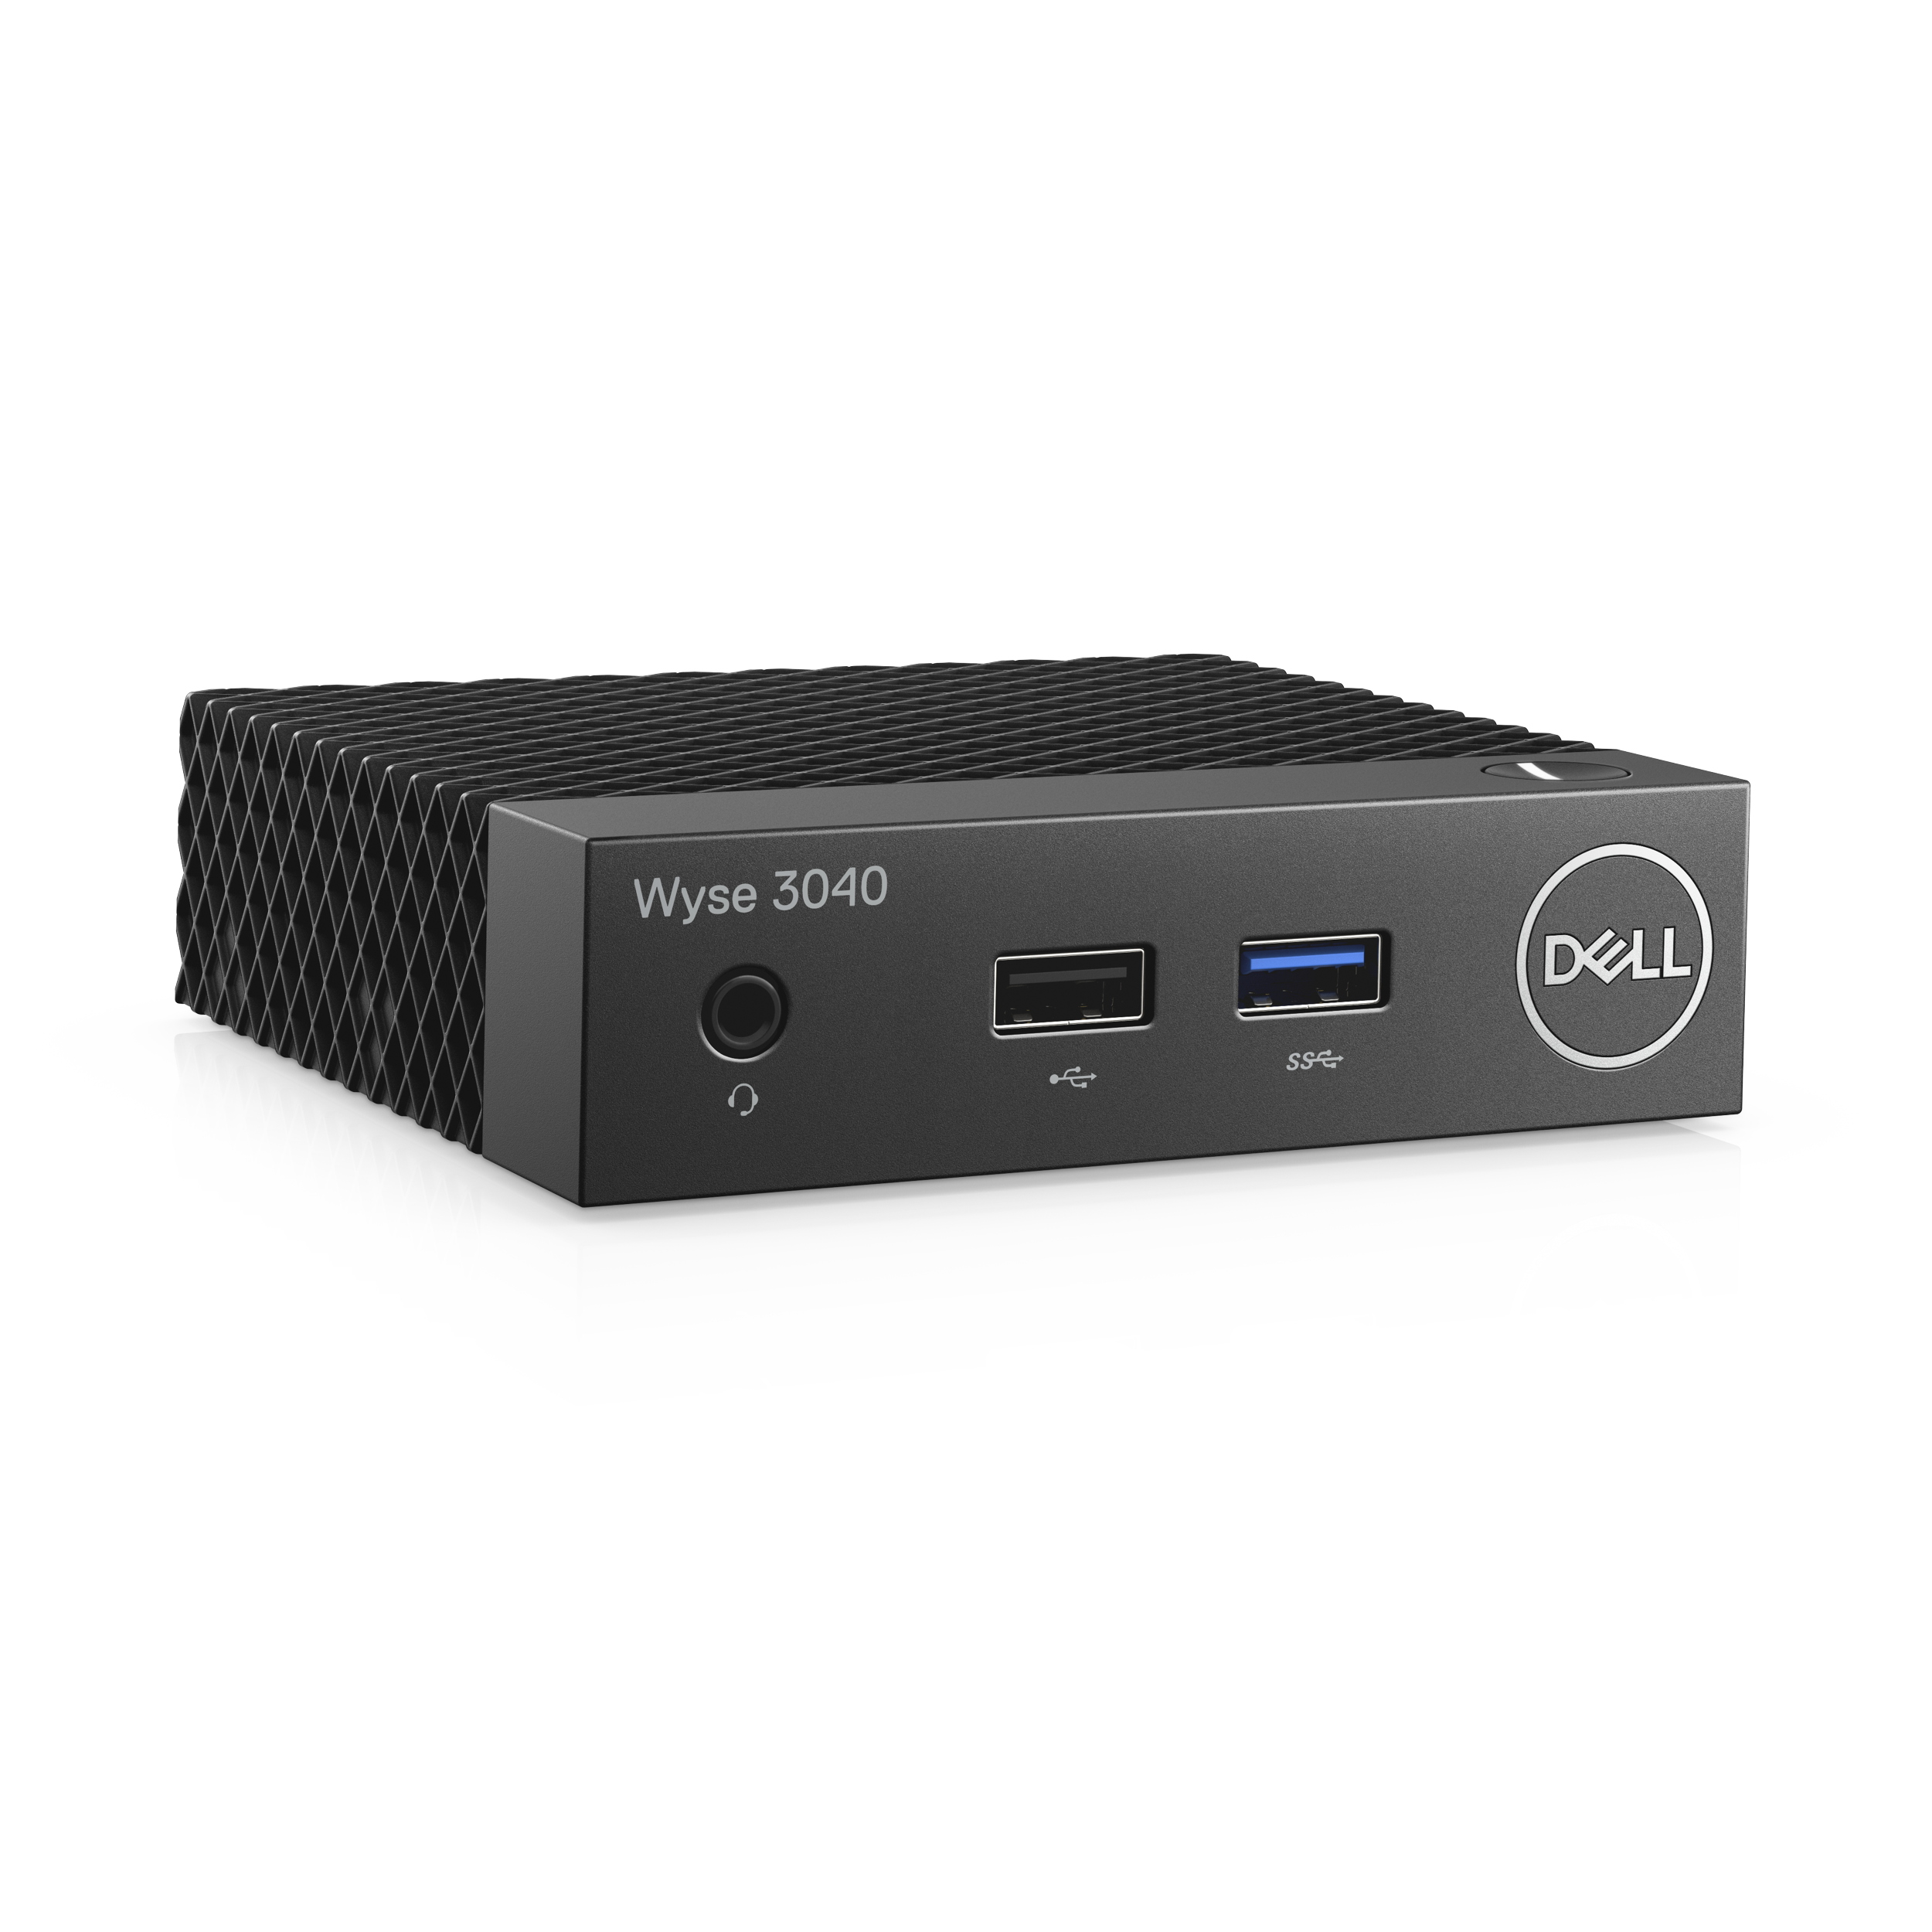 Dell stellt den Wyse 3040 Thin Client Micro-Computer vor